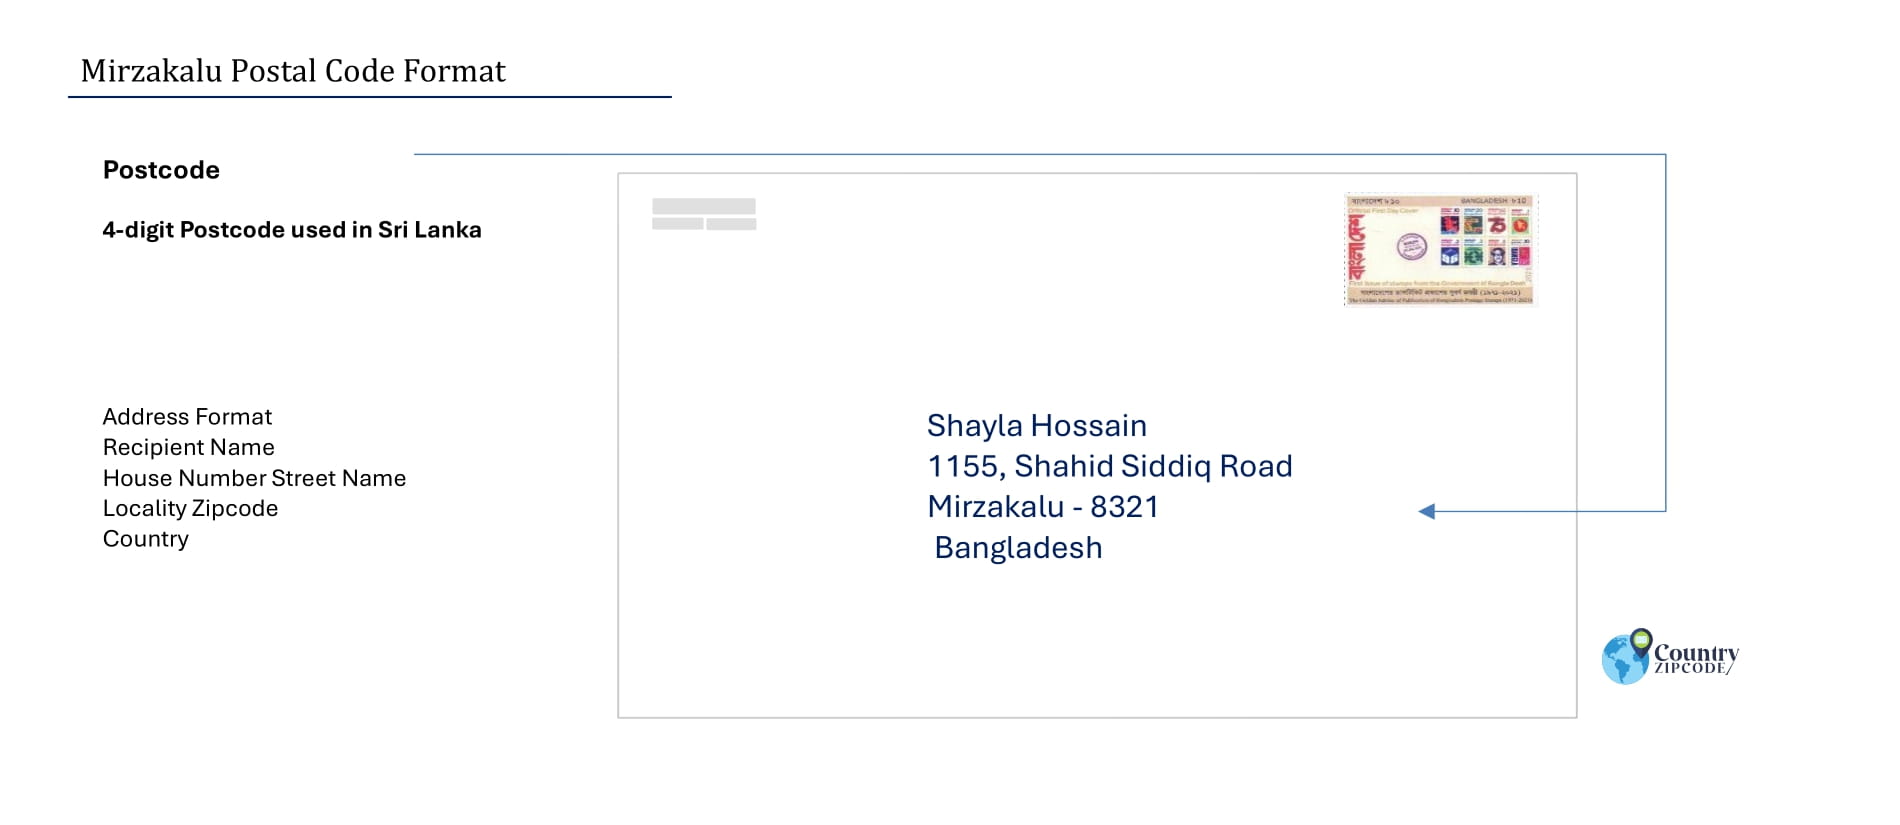 Mirzakalu Postal code format